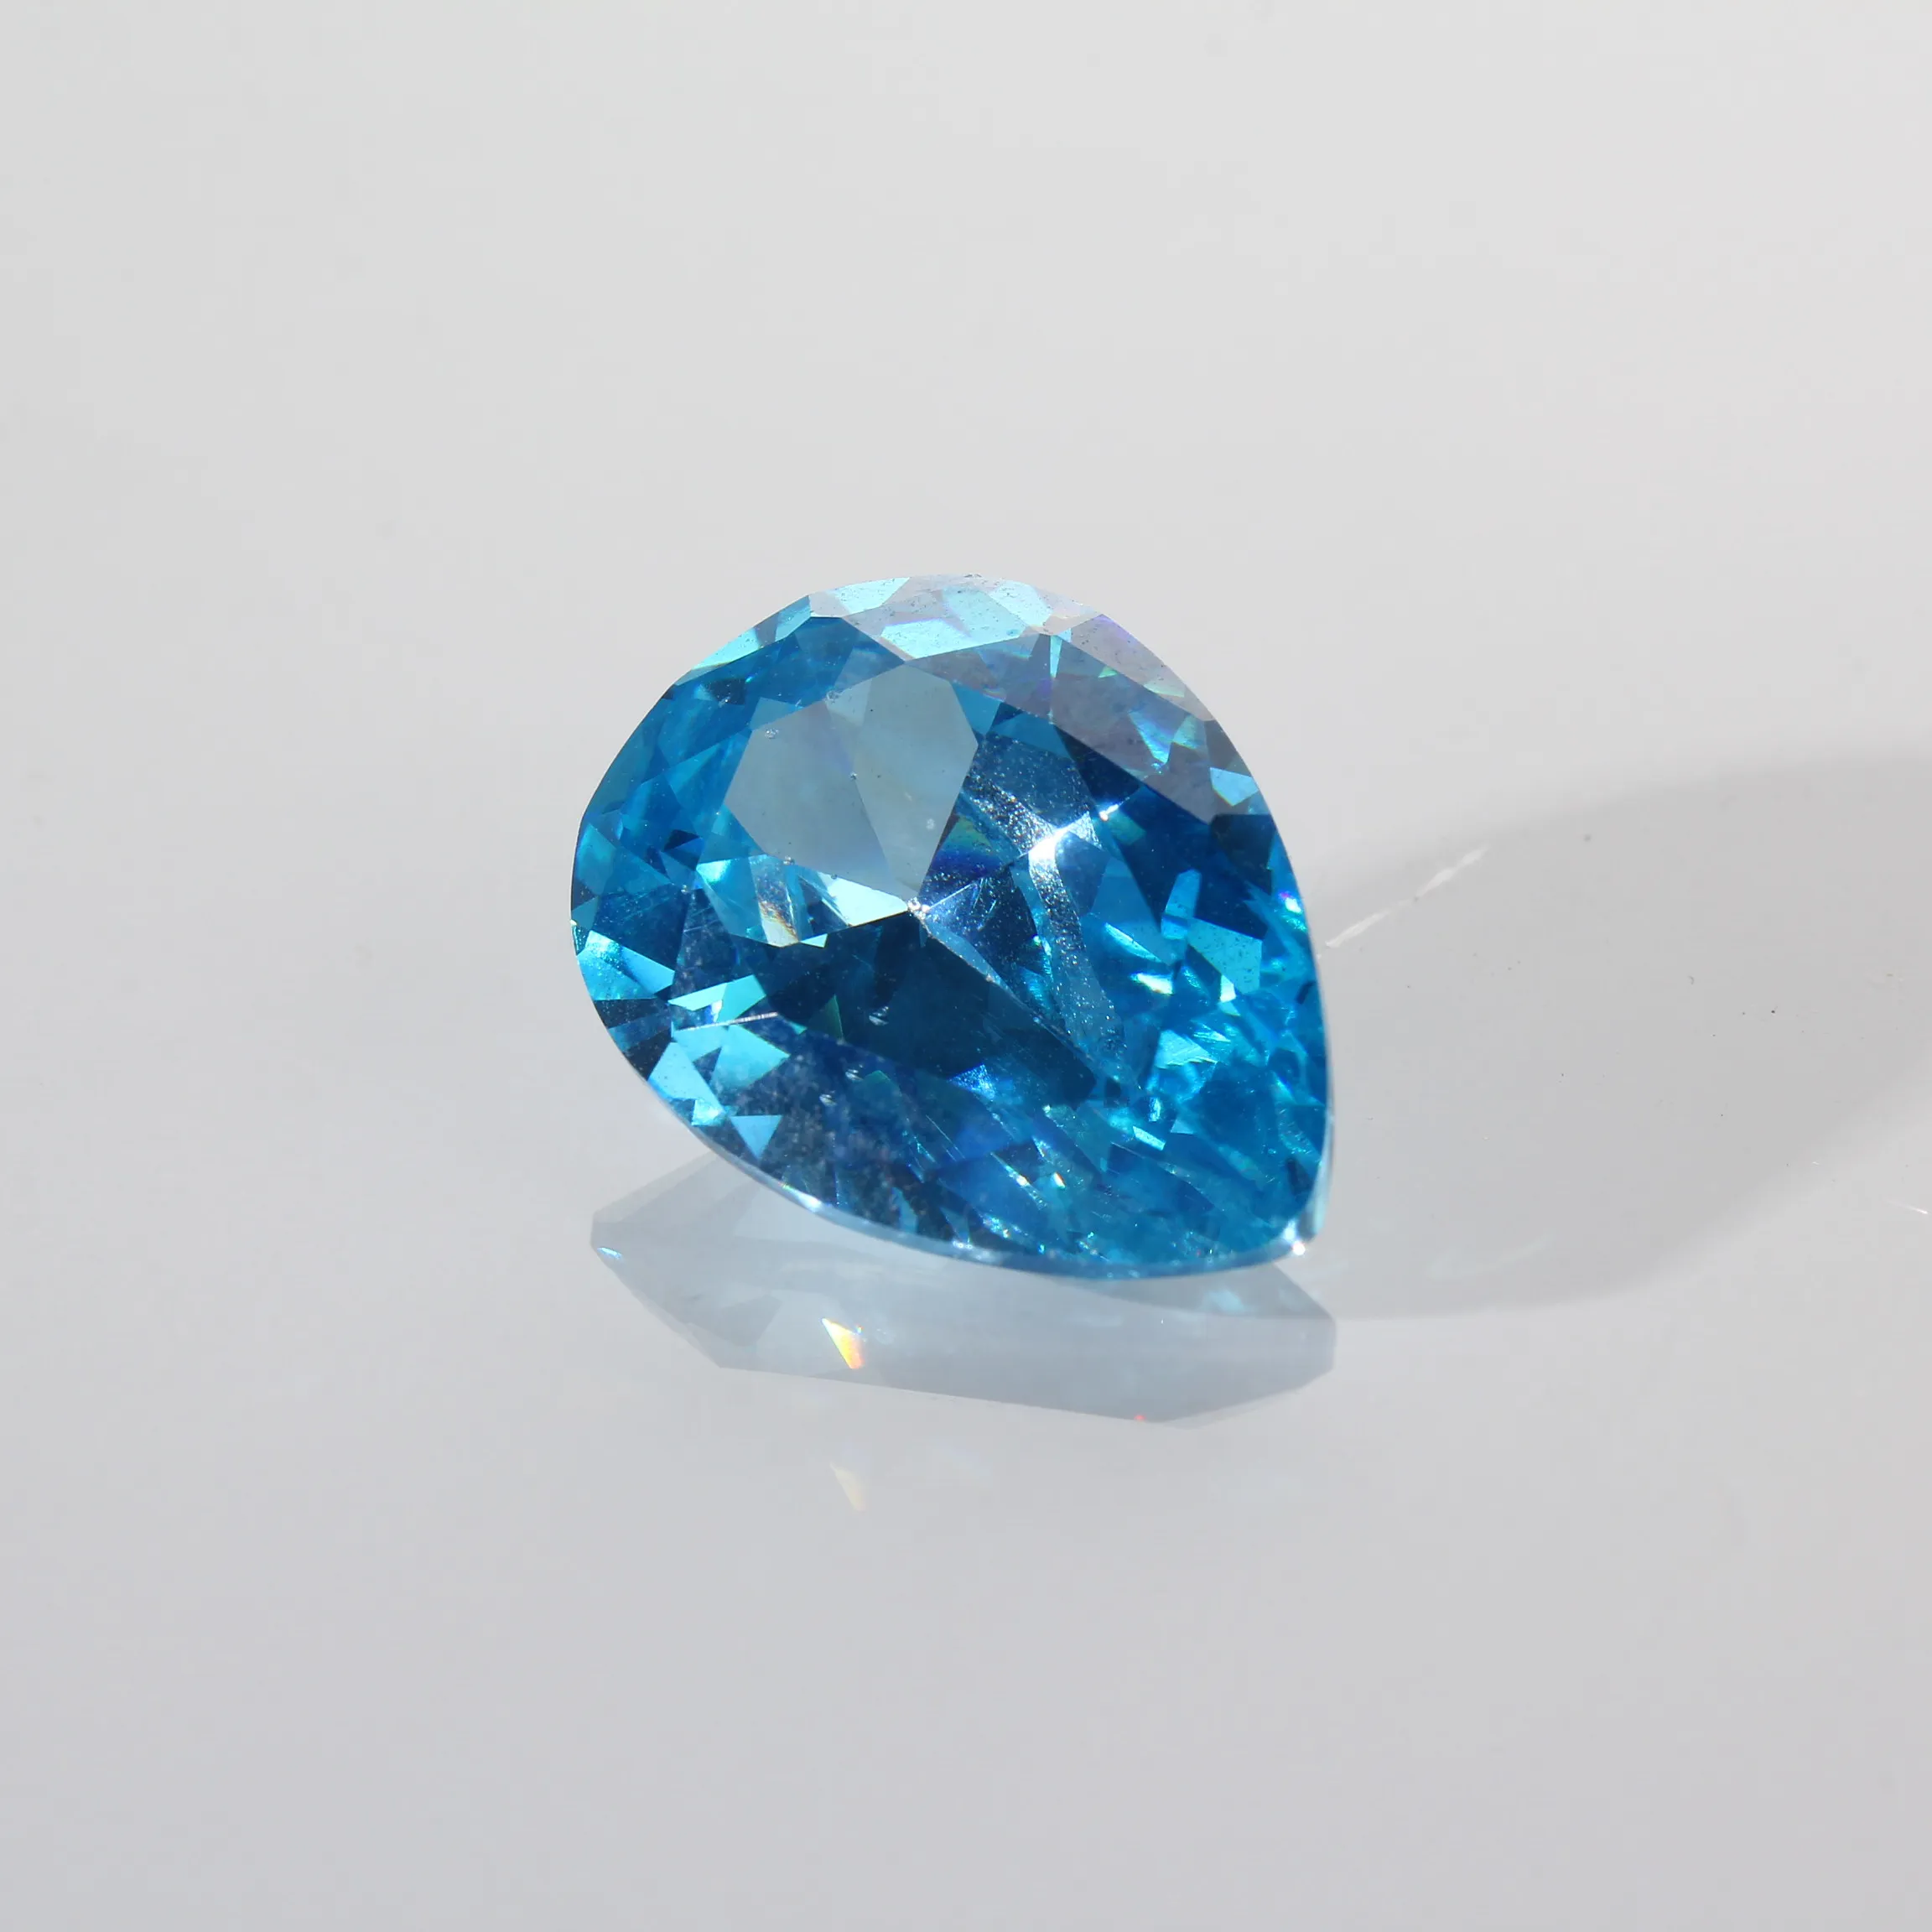 Prezzo all'ingrosso delle pietre di Zirconia della pera della pietra preziosa blu chiaro allentata 5A al grammo